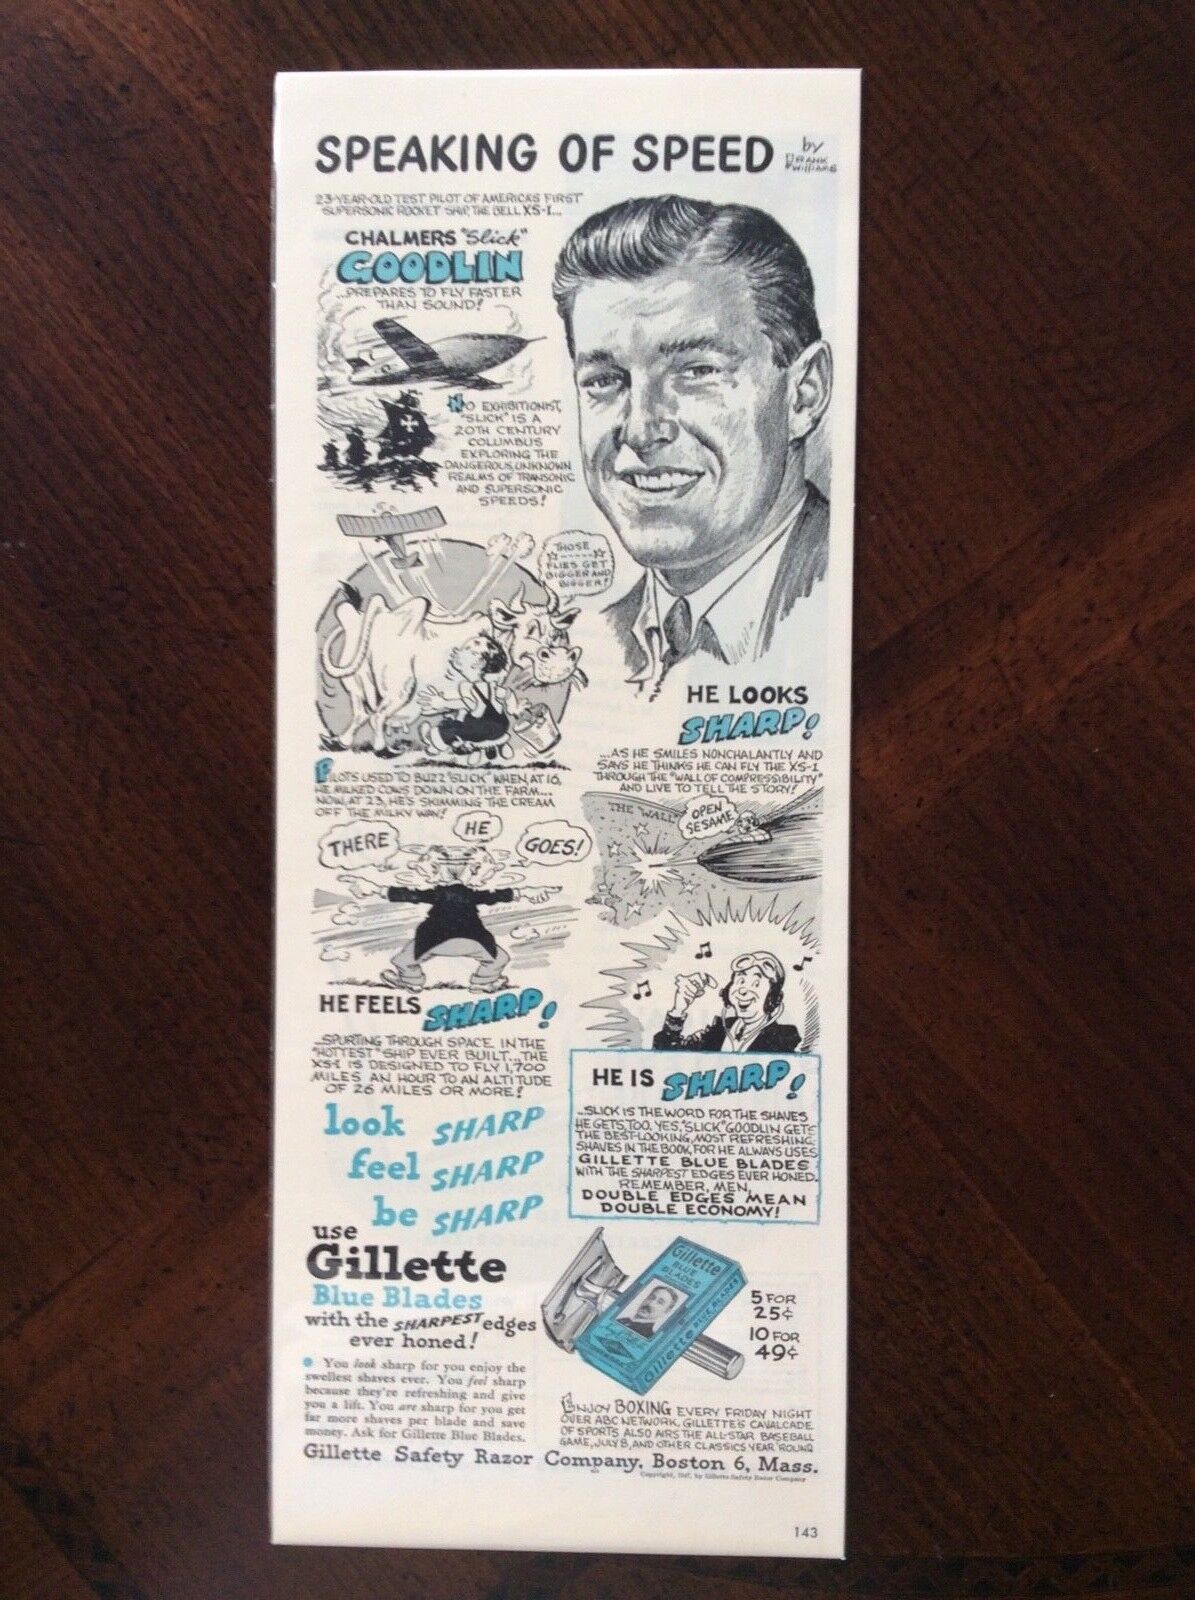 1947 vintage original color ad Gillette Safety Razor Chalmers “Slick” Goodlin 